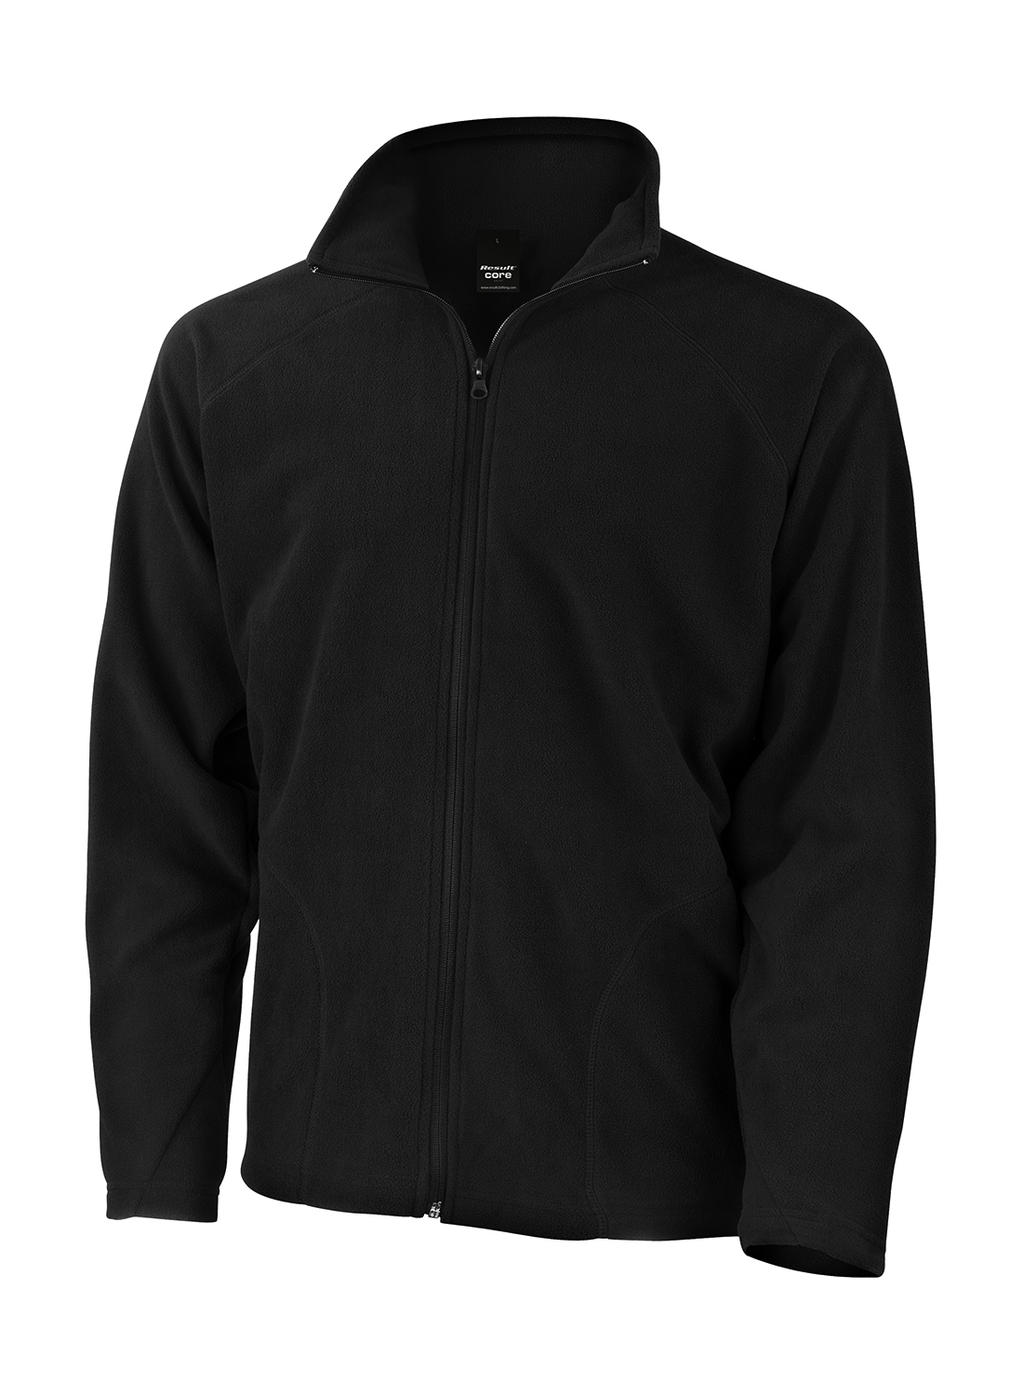  Microfleece Jacket in Farbe Black